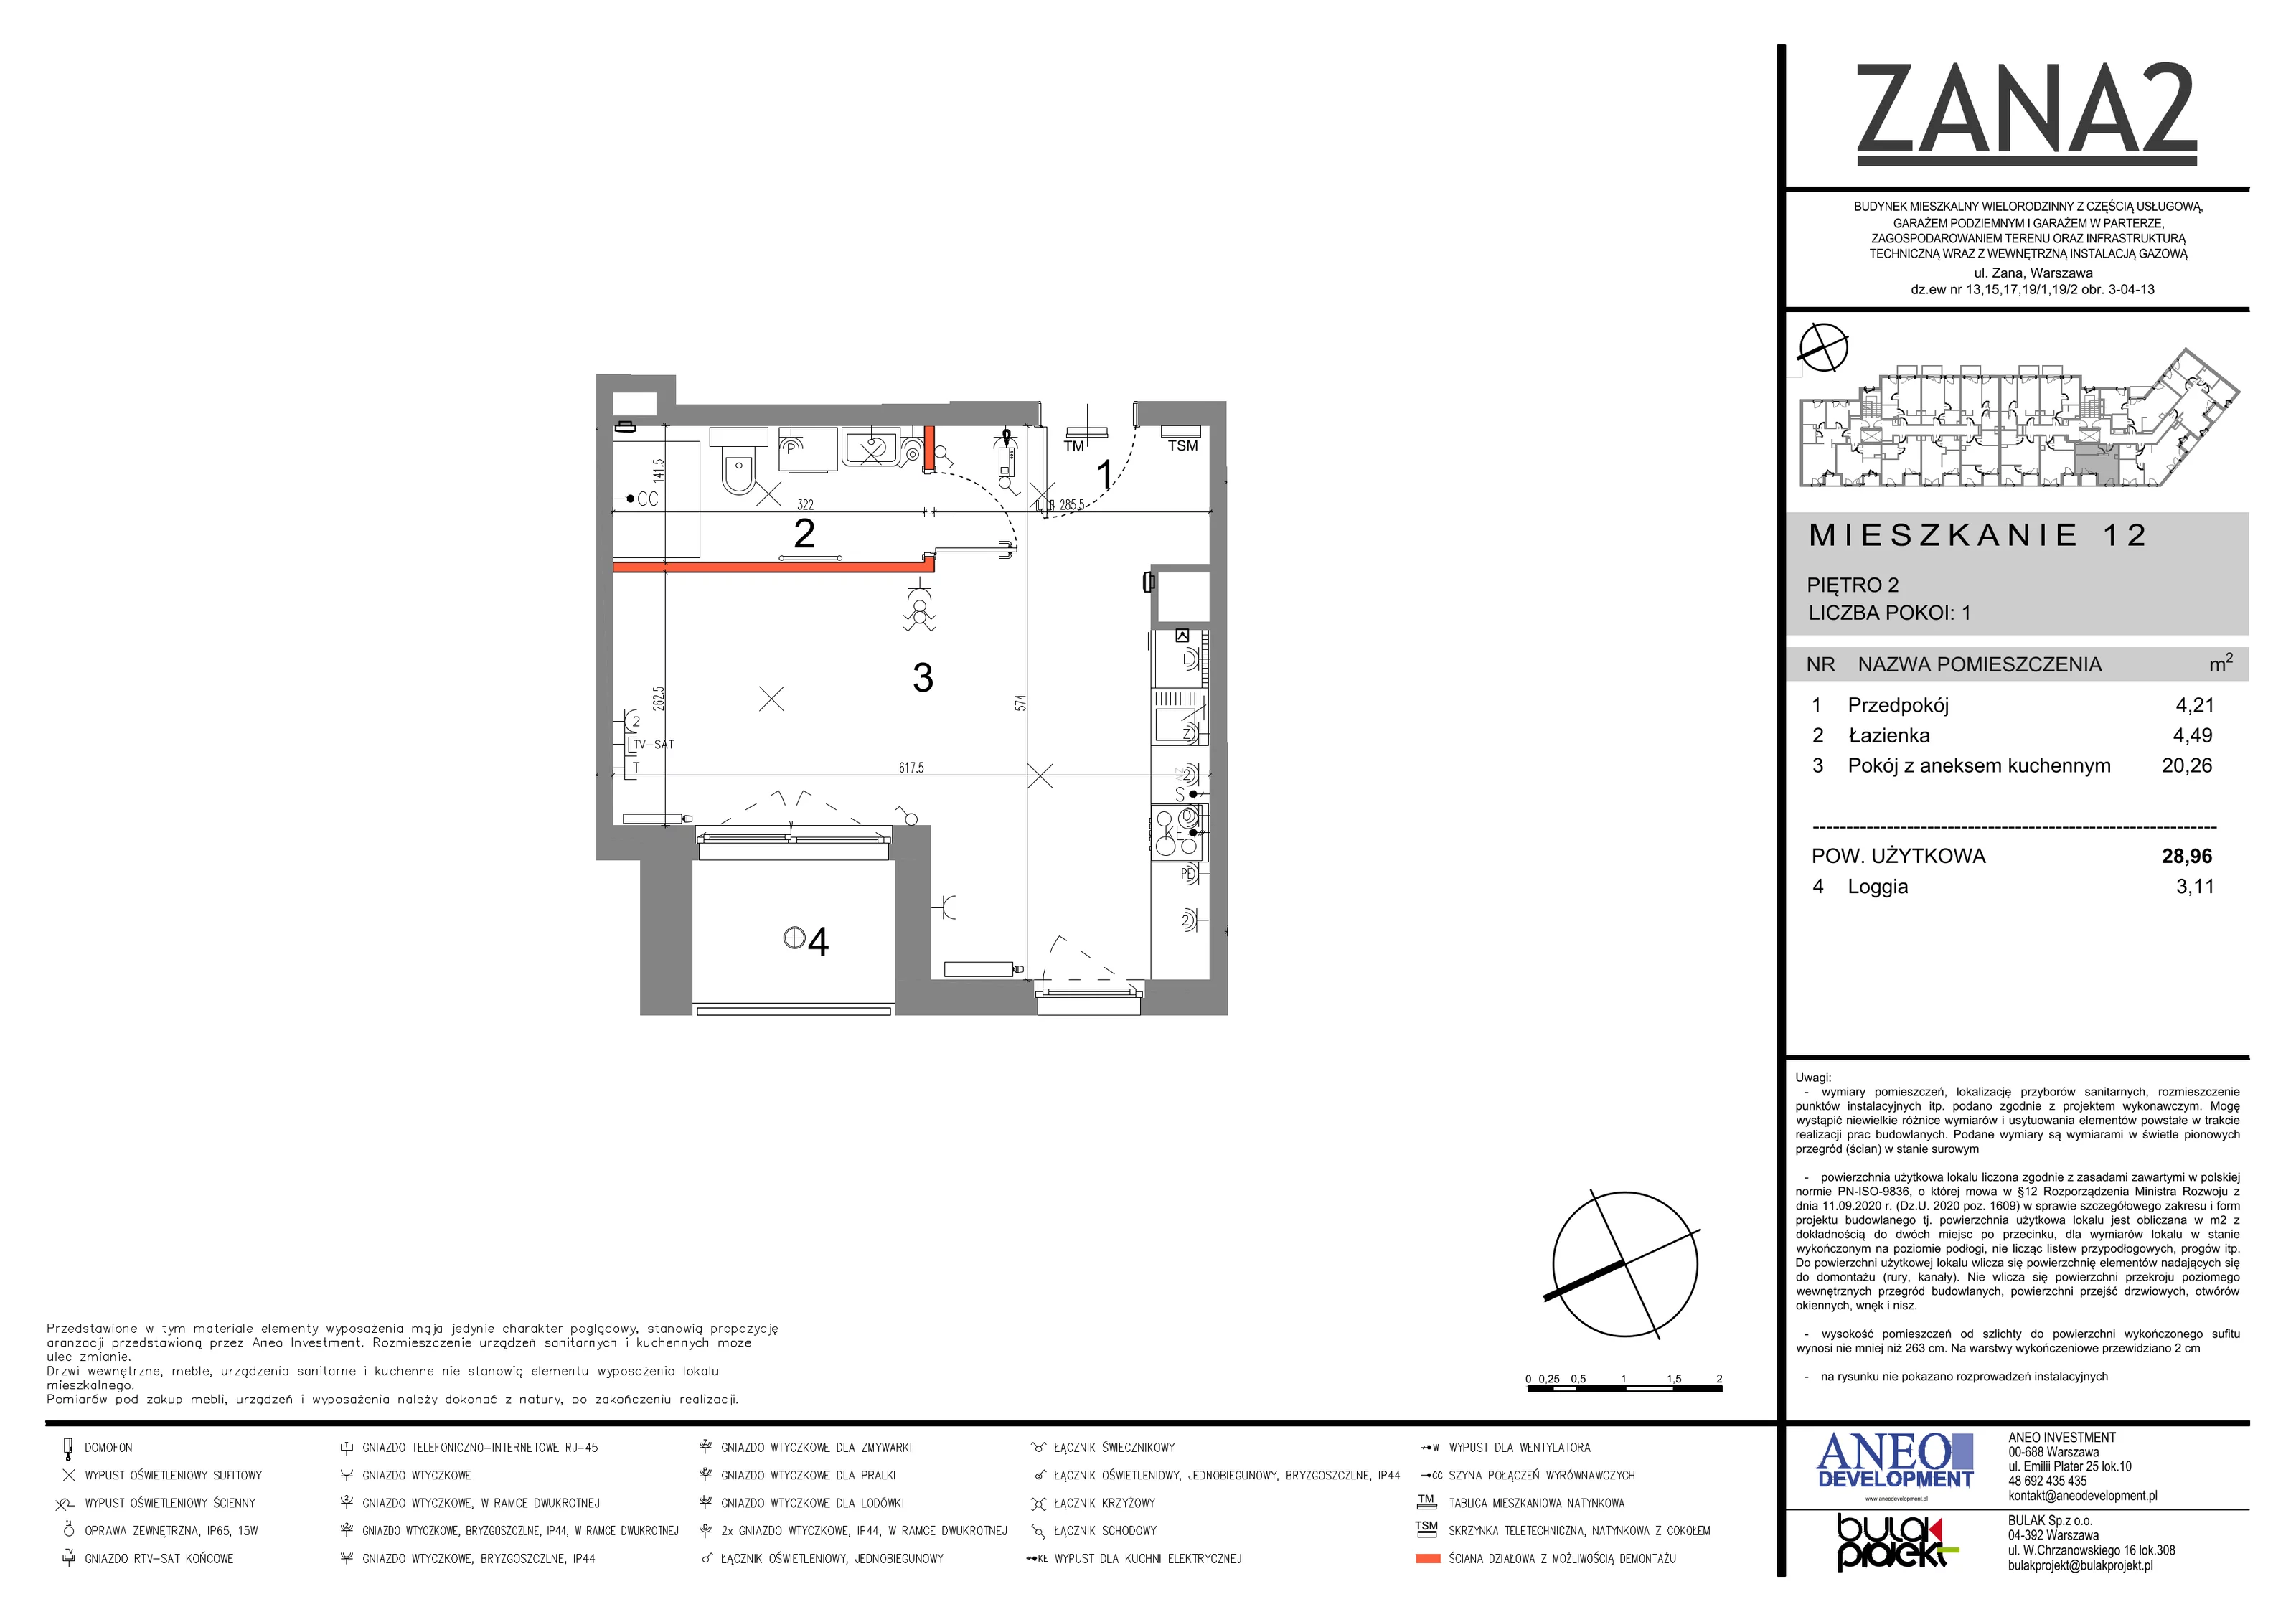 Mieszkanie 28,96 m², piętro 2, oferta nr 12, Zana 2, Warszawa, Praga Południe, Gocławek, ul. Tomasza Zana